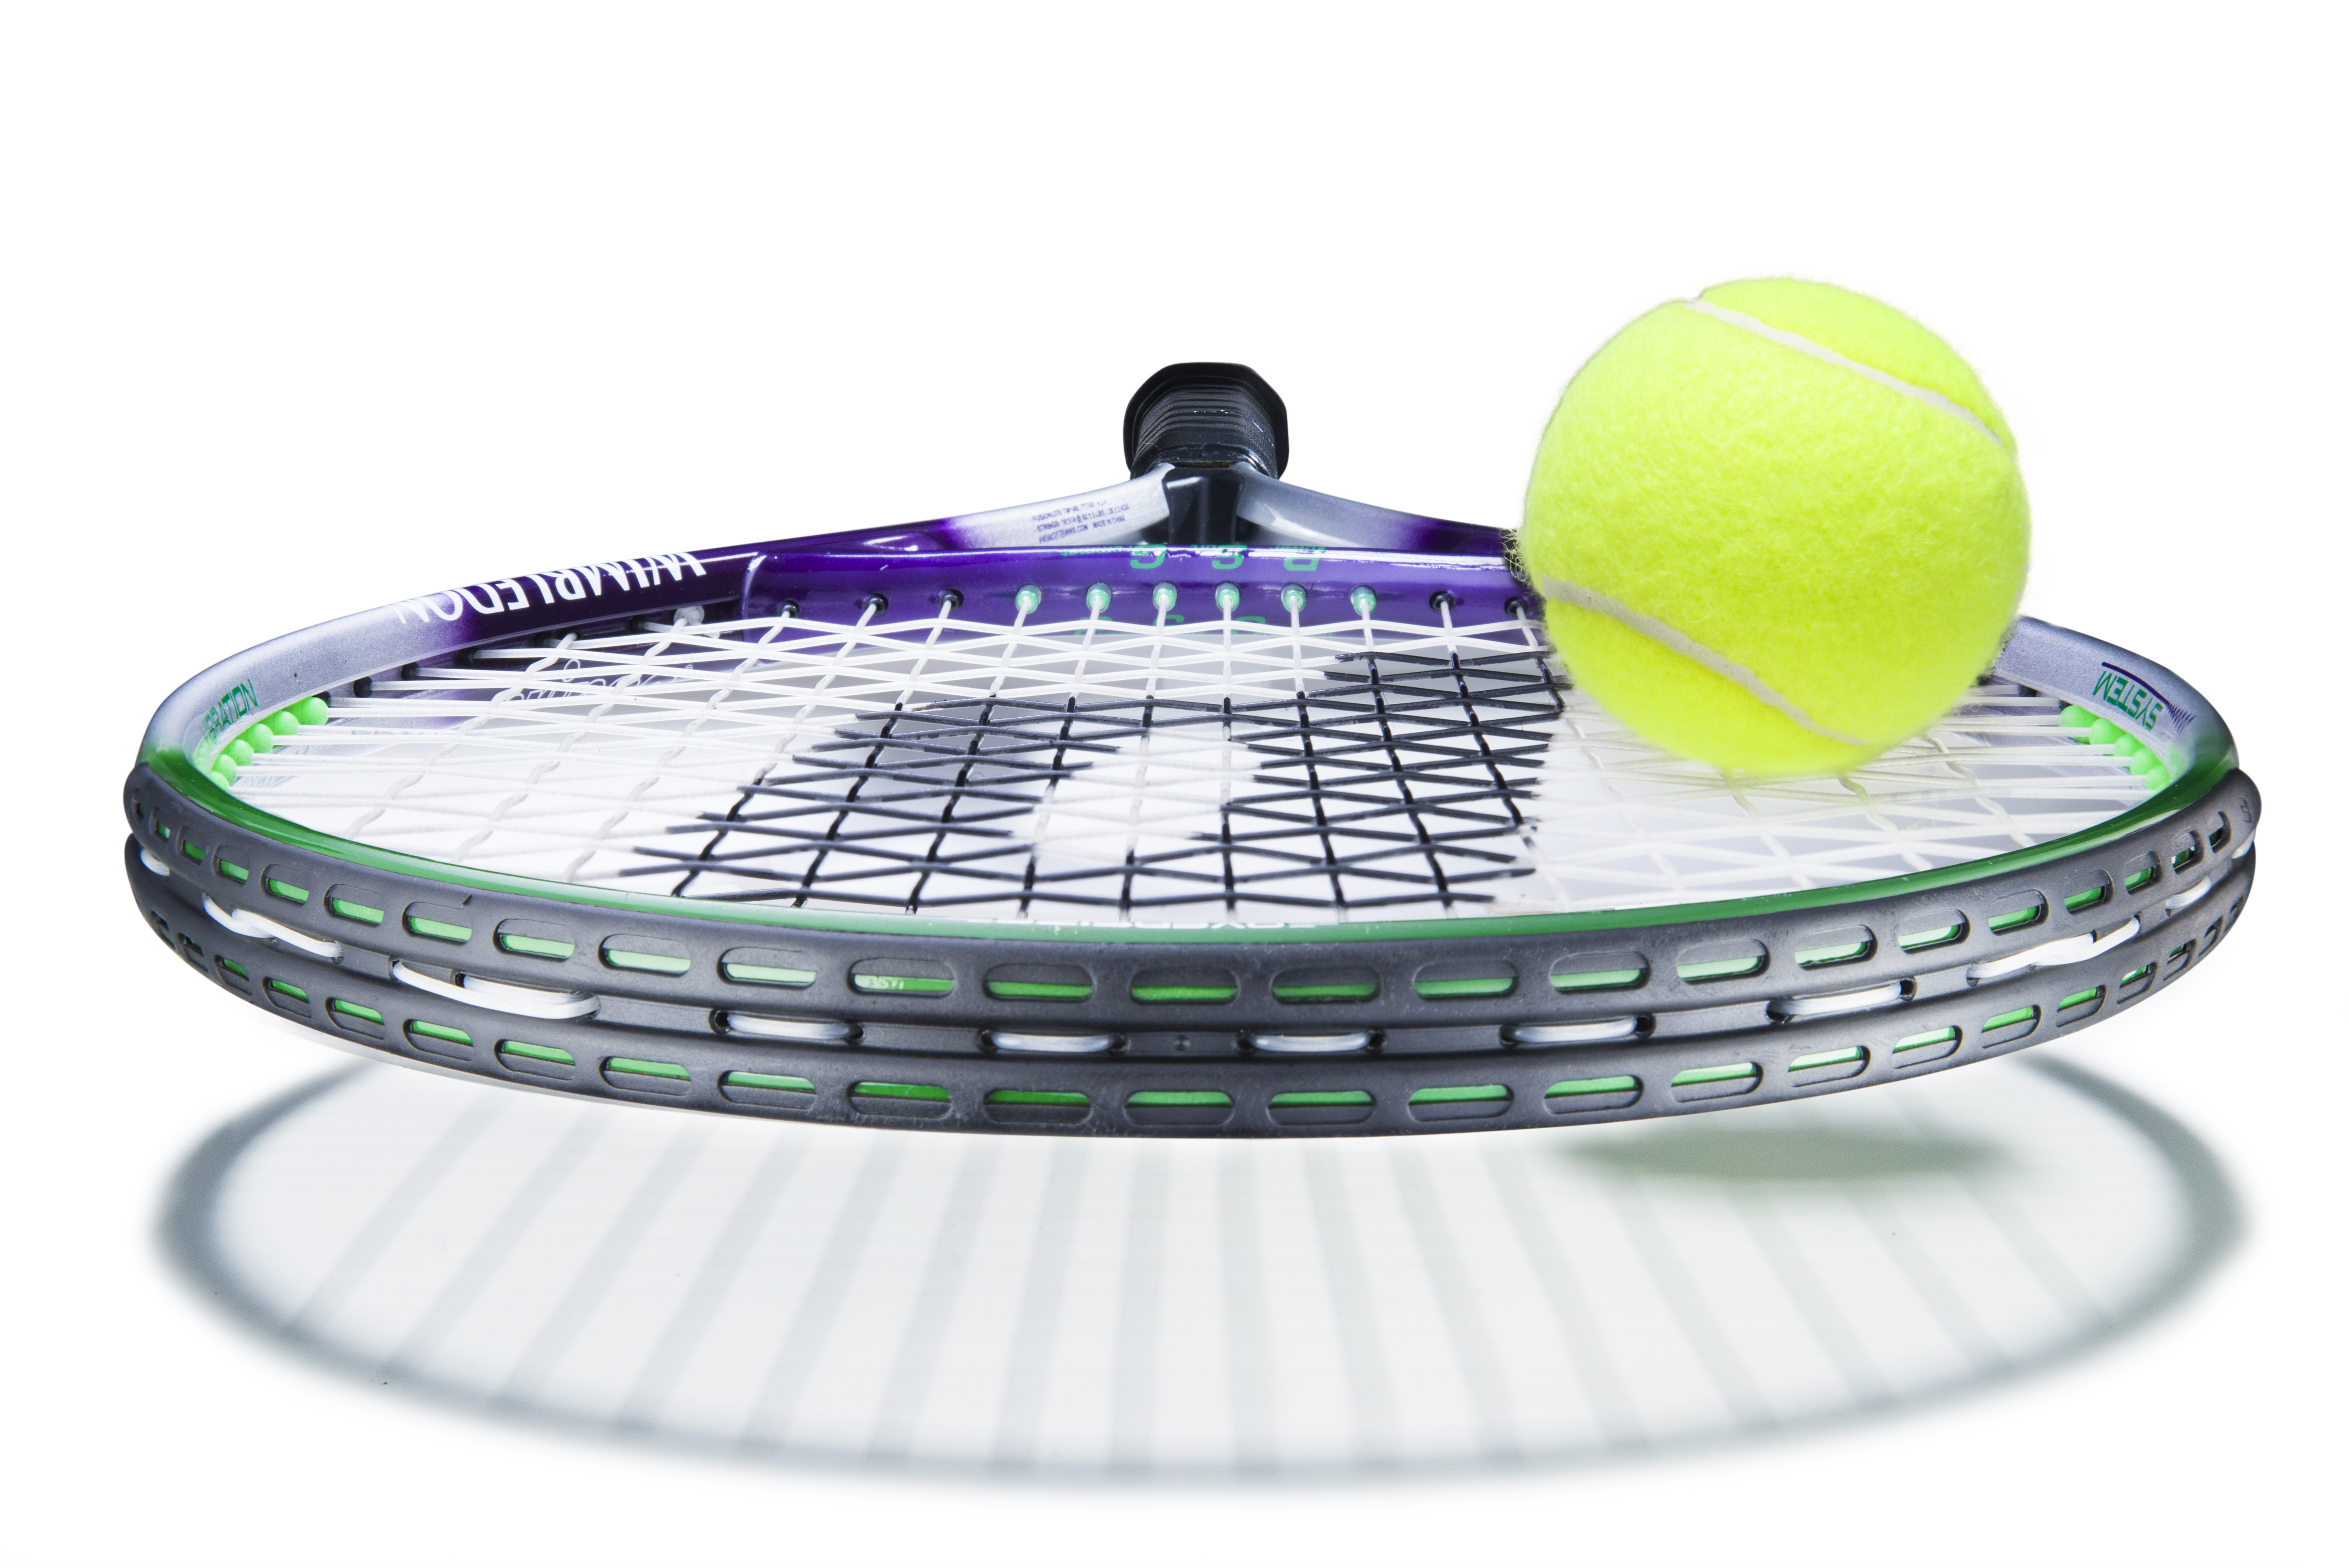 20130226_Prince_Tennis_Racket_FullRes